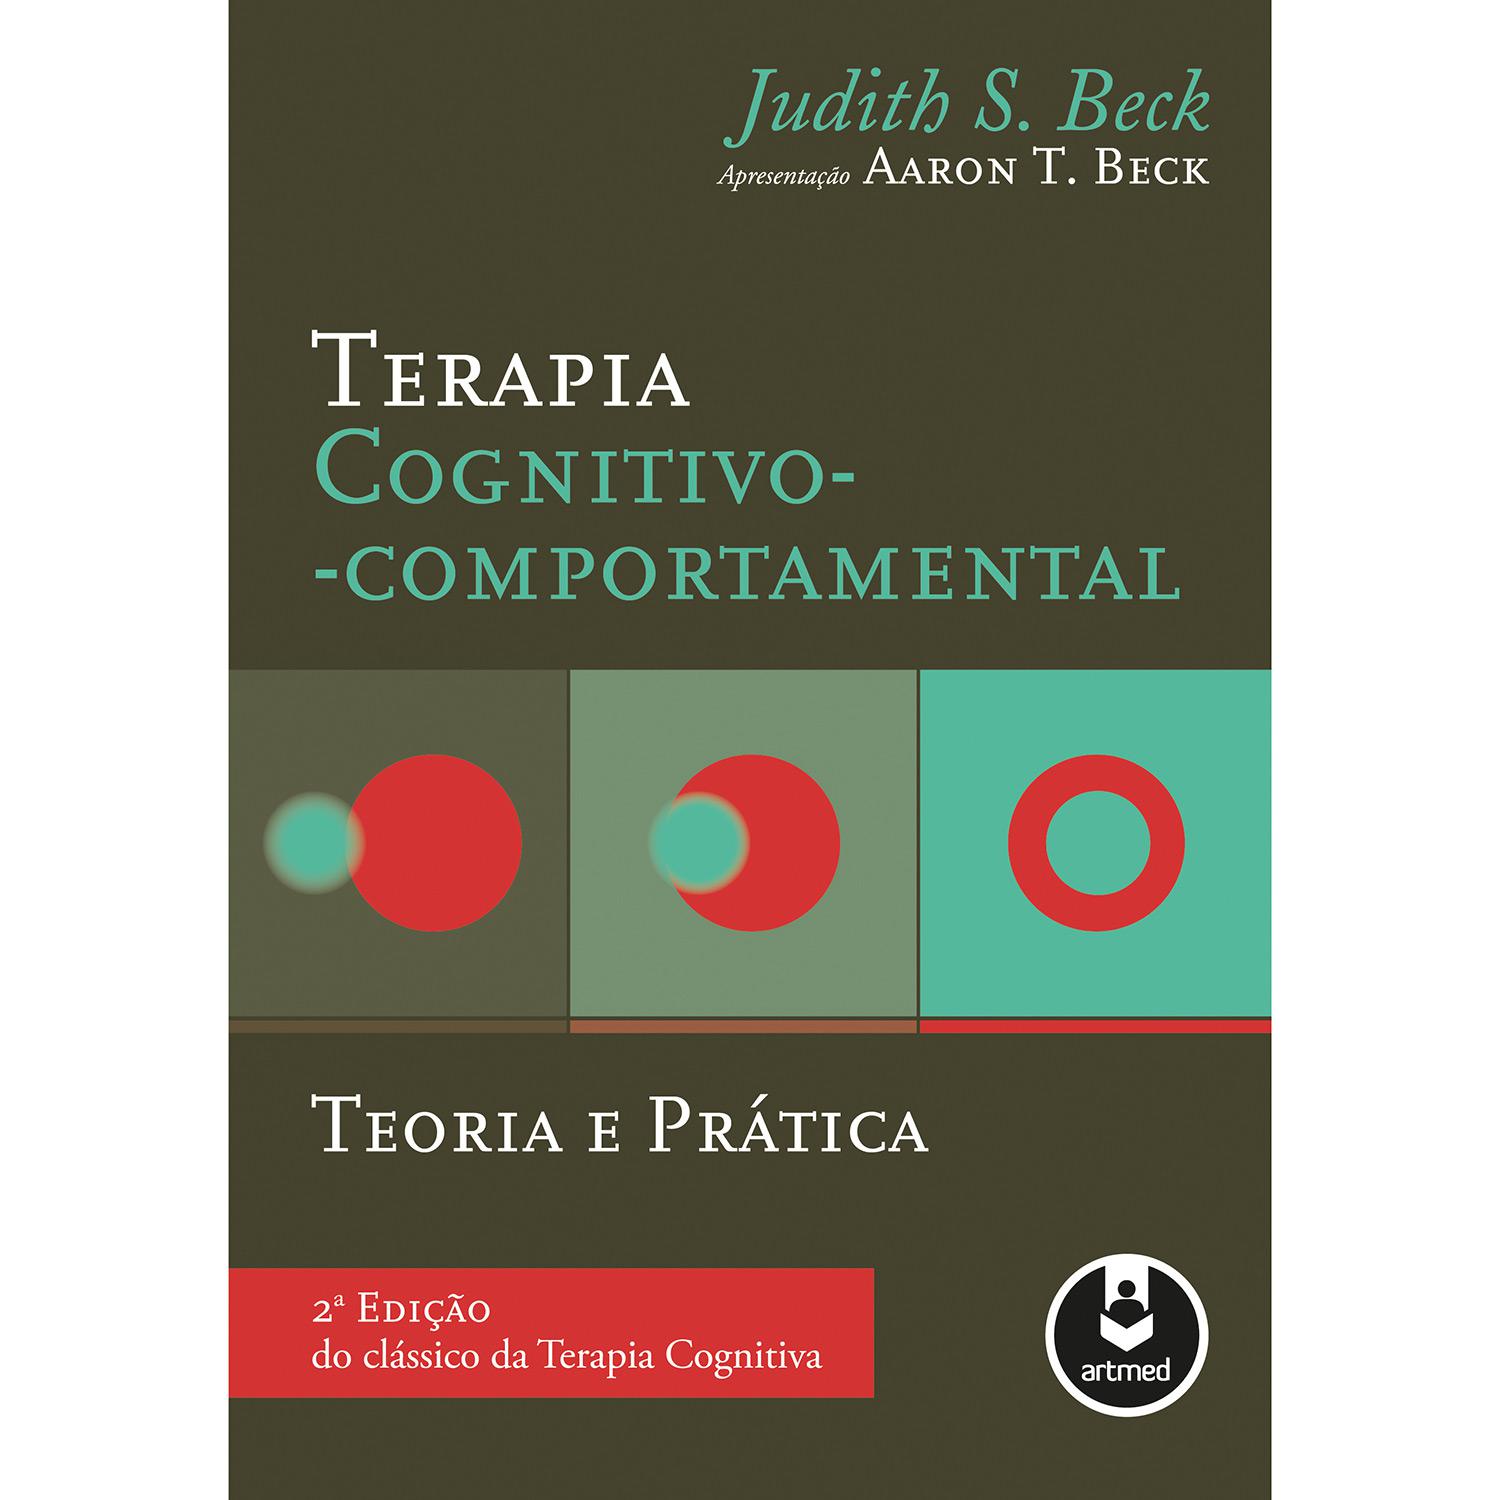 Livro - Terapia Cognitivo-Comportamental:Teoria E Prática é bom? Vale a pena?